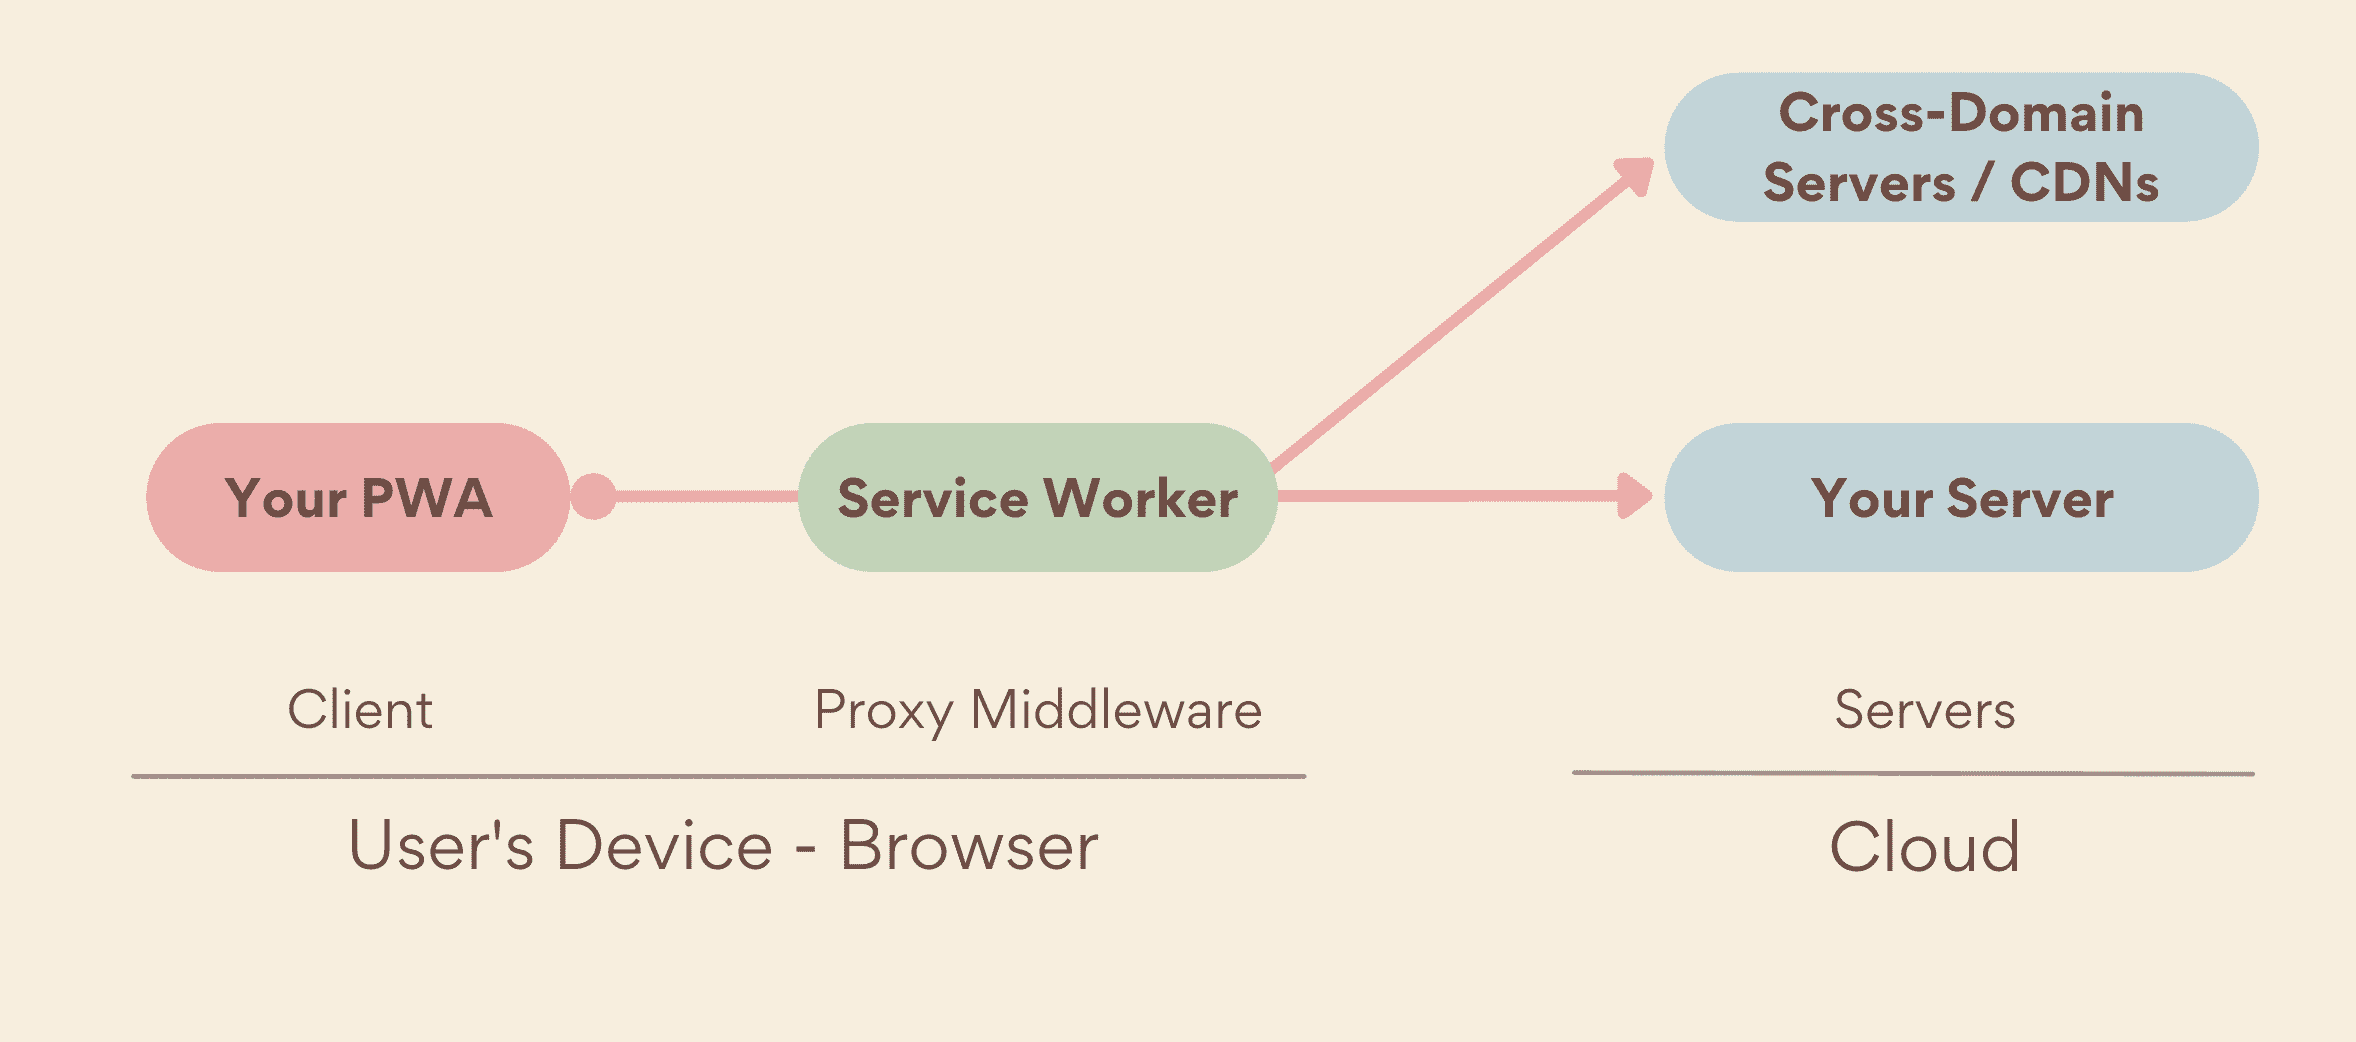 Um service worker como proxy de middleware, executado no lado do dispositivo, entre o PWA e os servidores, o que inclui seus próprios servidores e servidores de vários domínios.